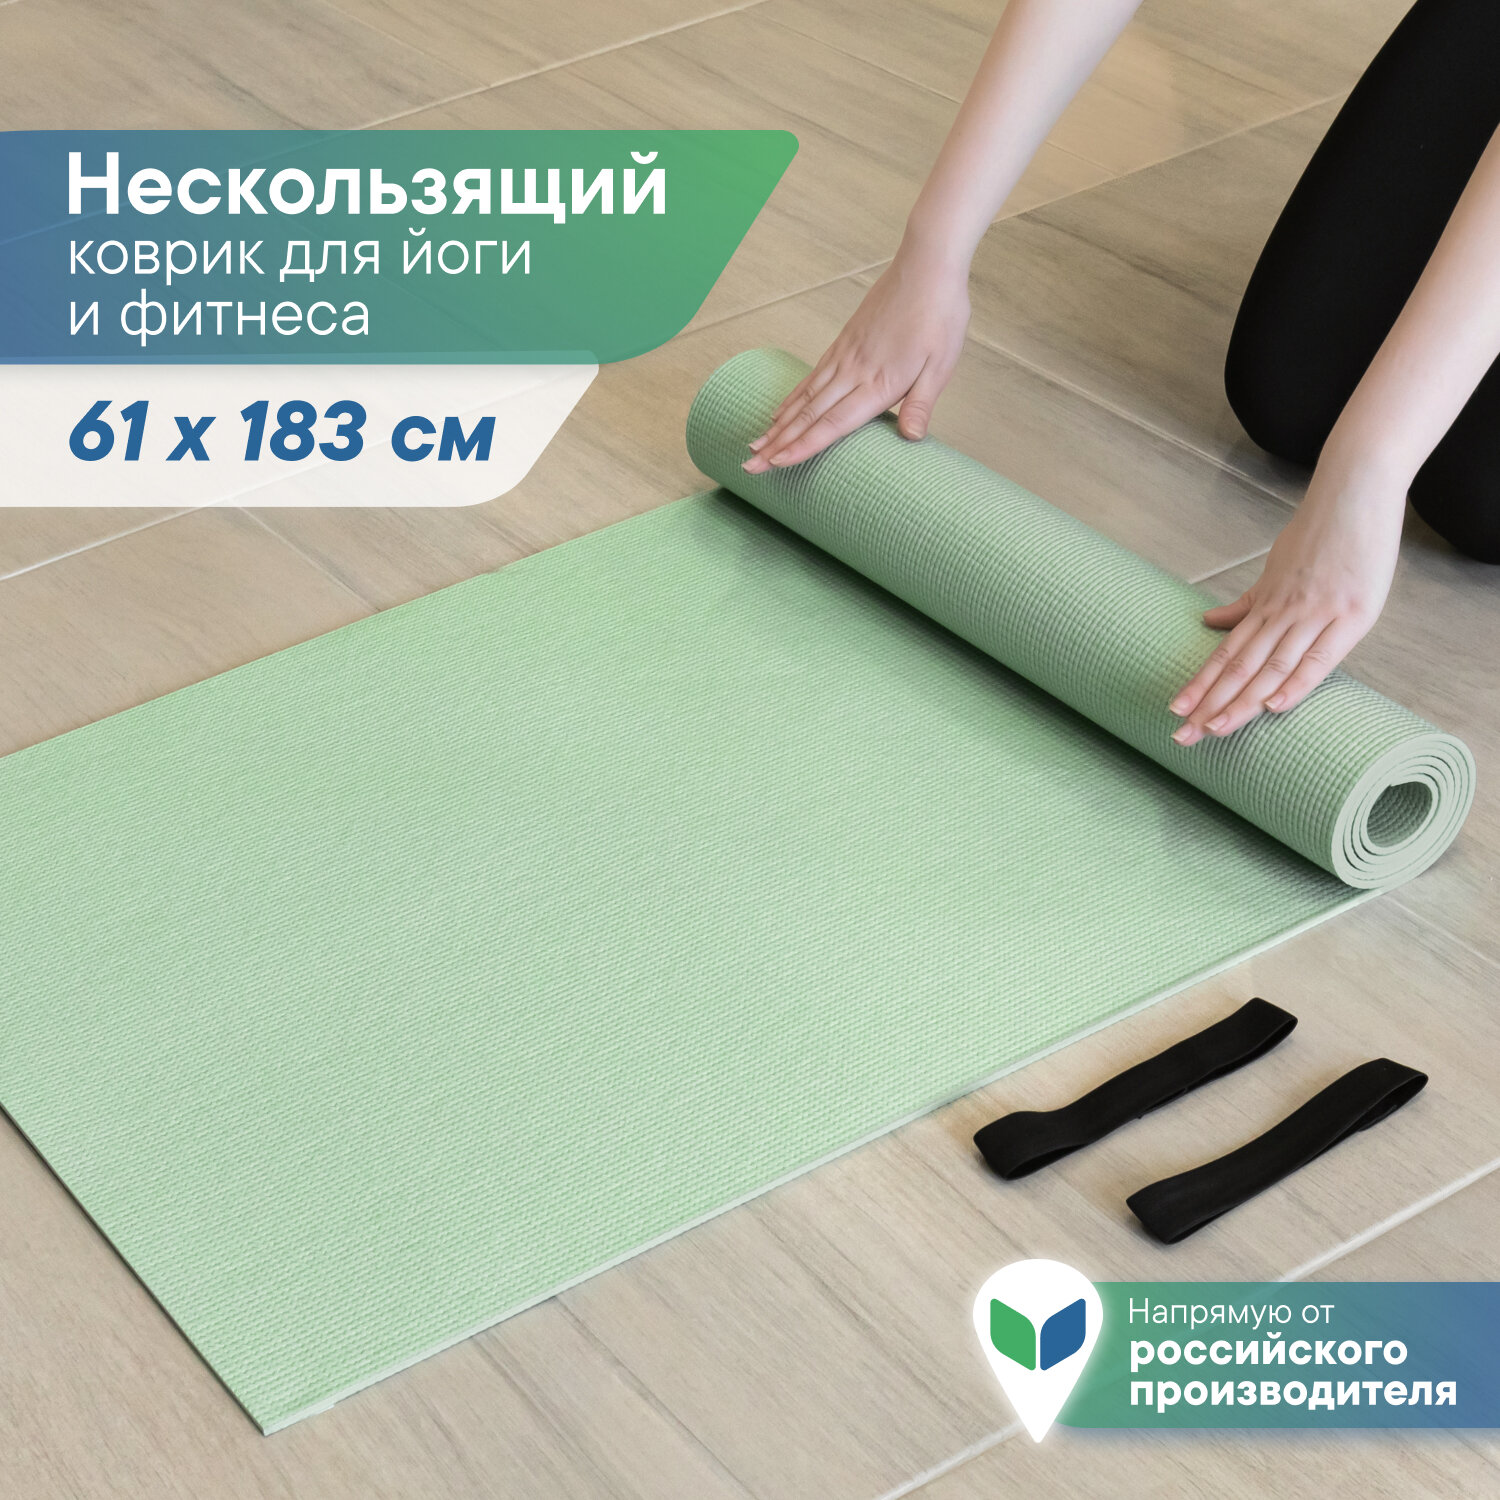 Коврик VILINA спортивный для йоги и фитнеса, растяжки, гимнастики 0,3 см 61х183 см фисташковый\зеленый